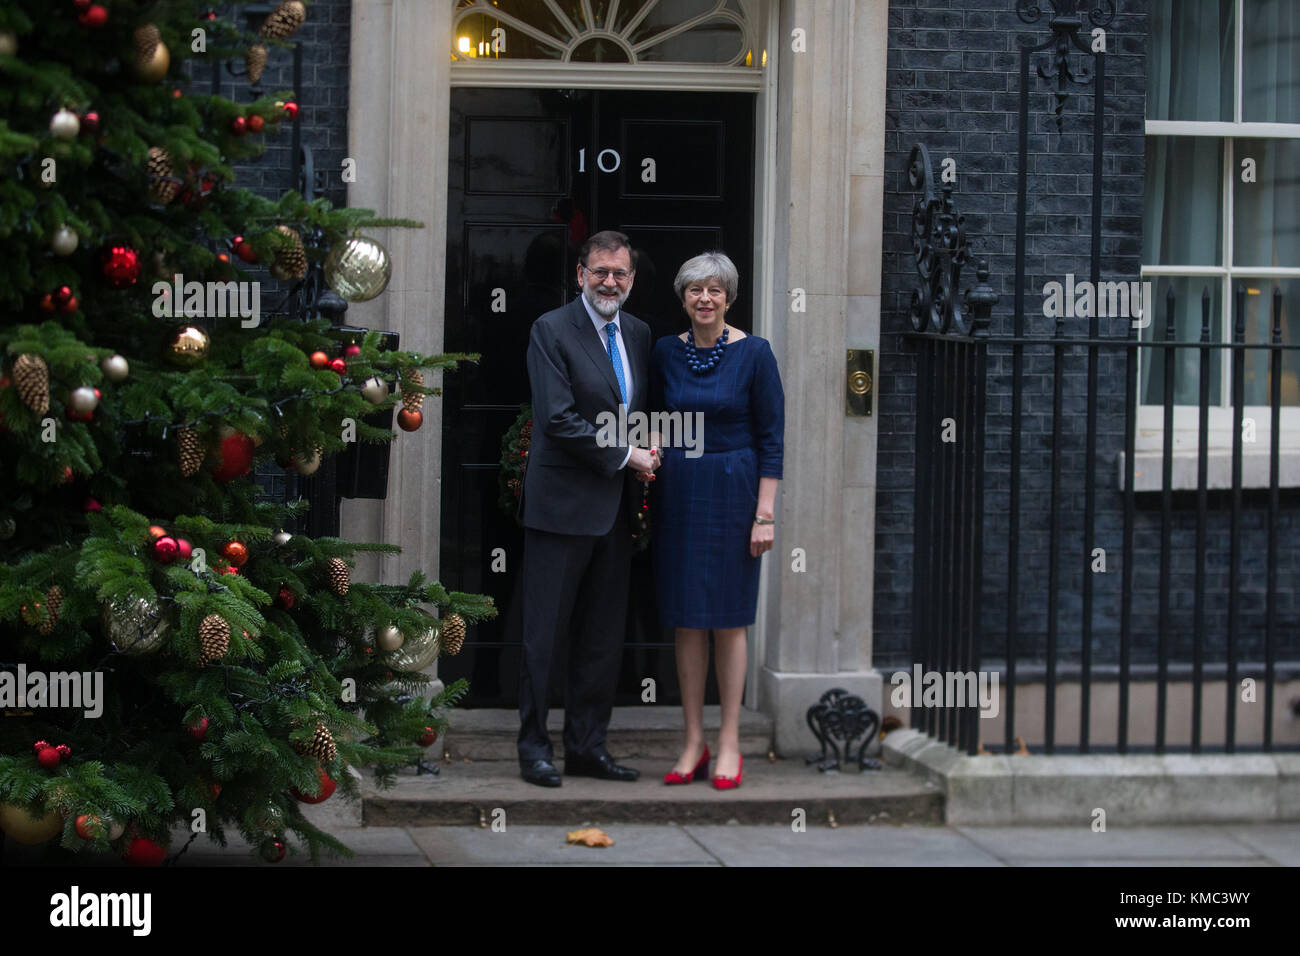 Premier Ministre, Theresa May, rencontre le Premier Ministre espagnol, Mariano Rajoy pour des entretiens au 10 Downing Street Banque D'Images